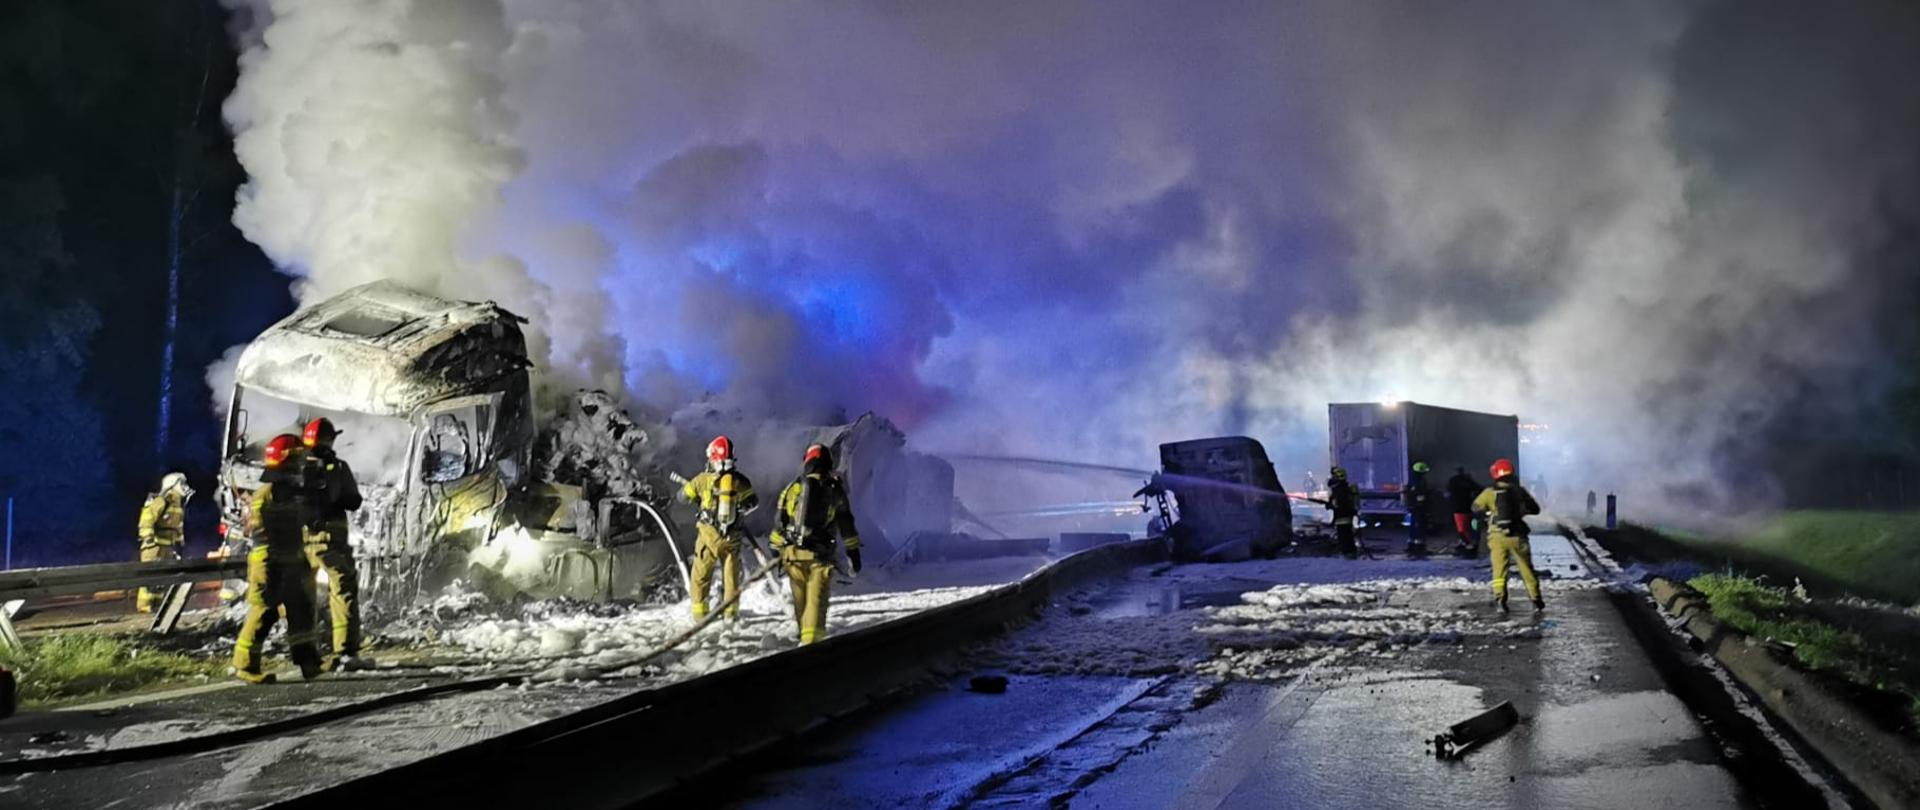 Na zdjęciu znajdują się wraki spalonych samochodów ciężarowych na autostradzie, nad którymi unoszą się kłęby pary i dymu oraz strażacy podający pianę gaśniczą 